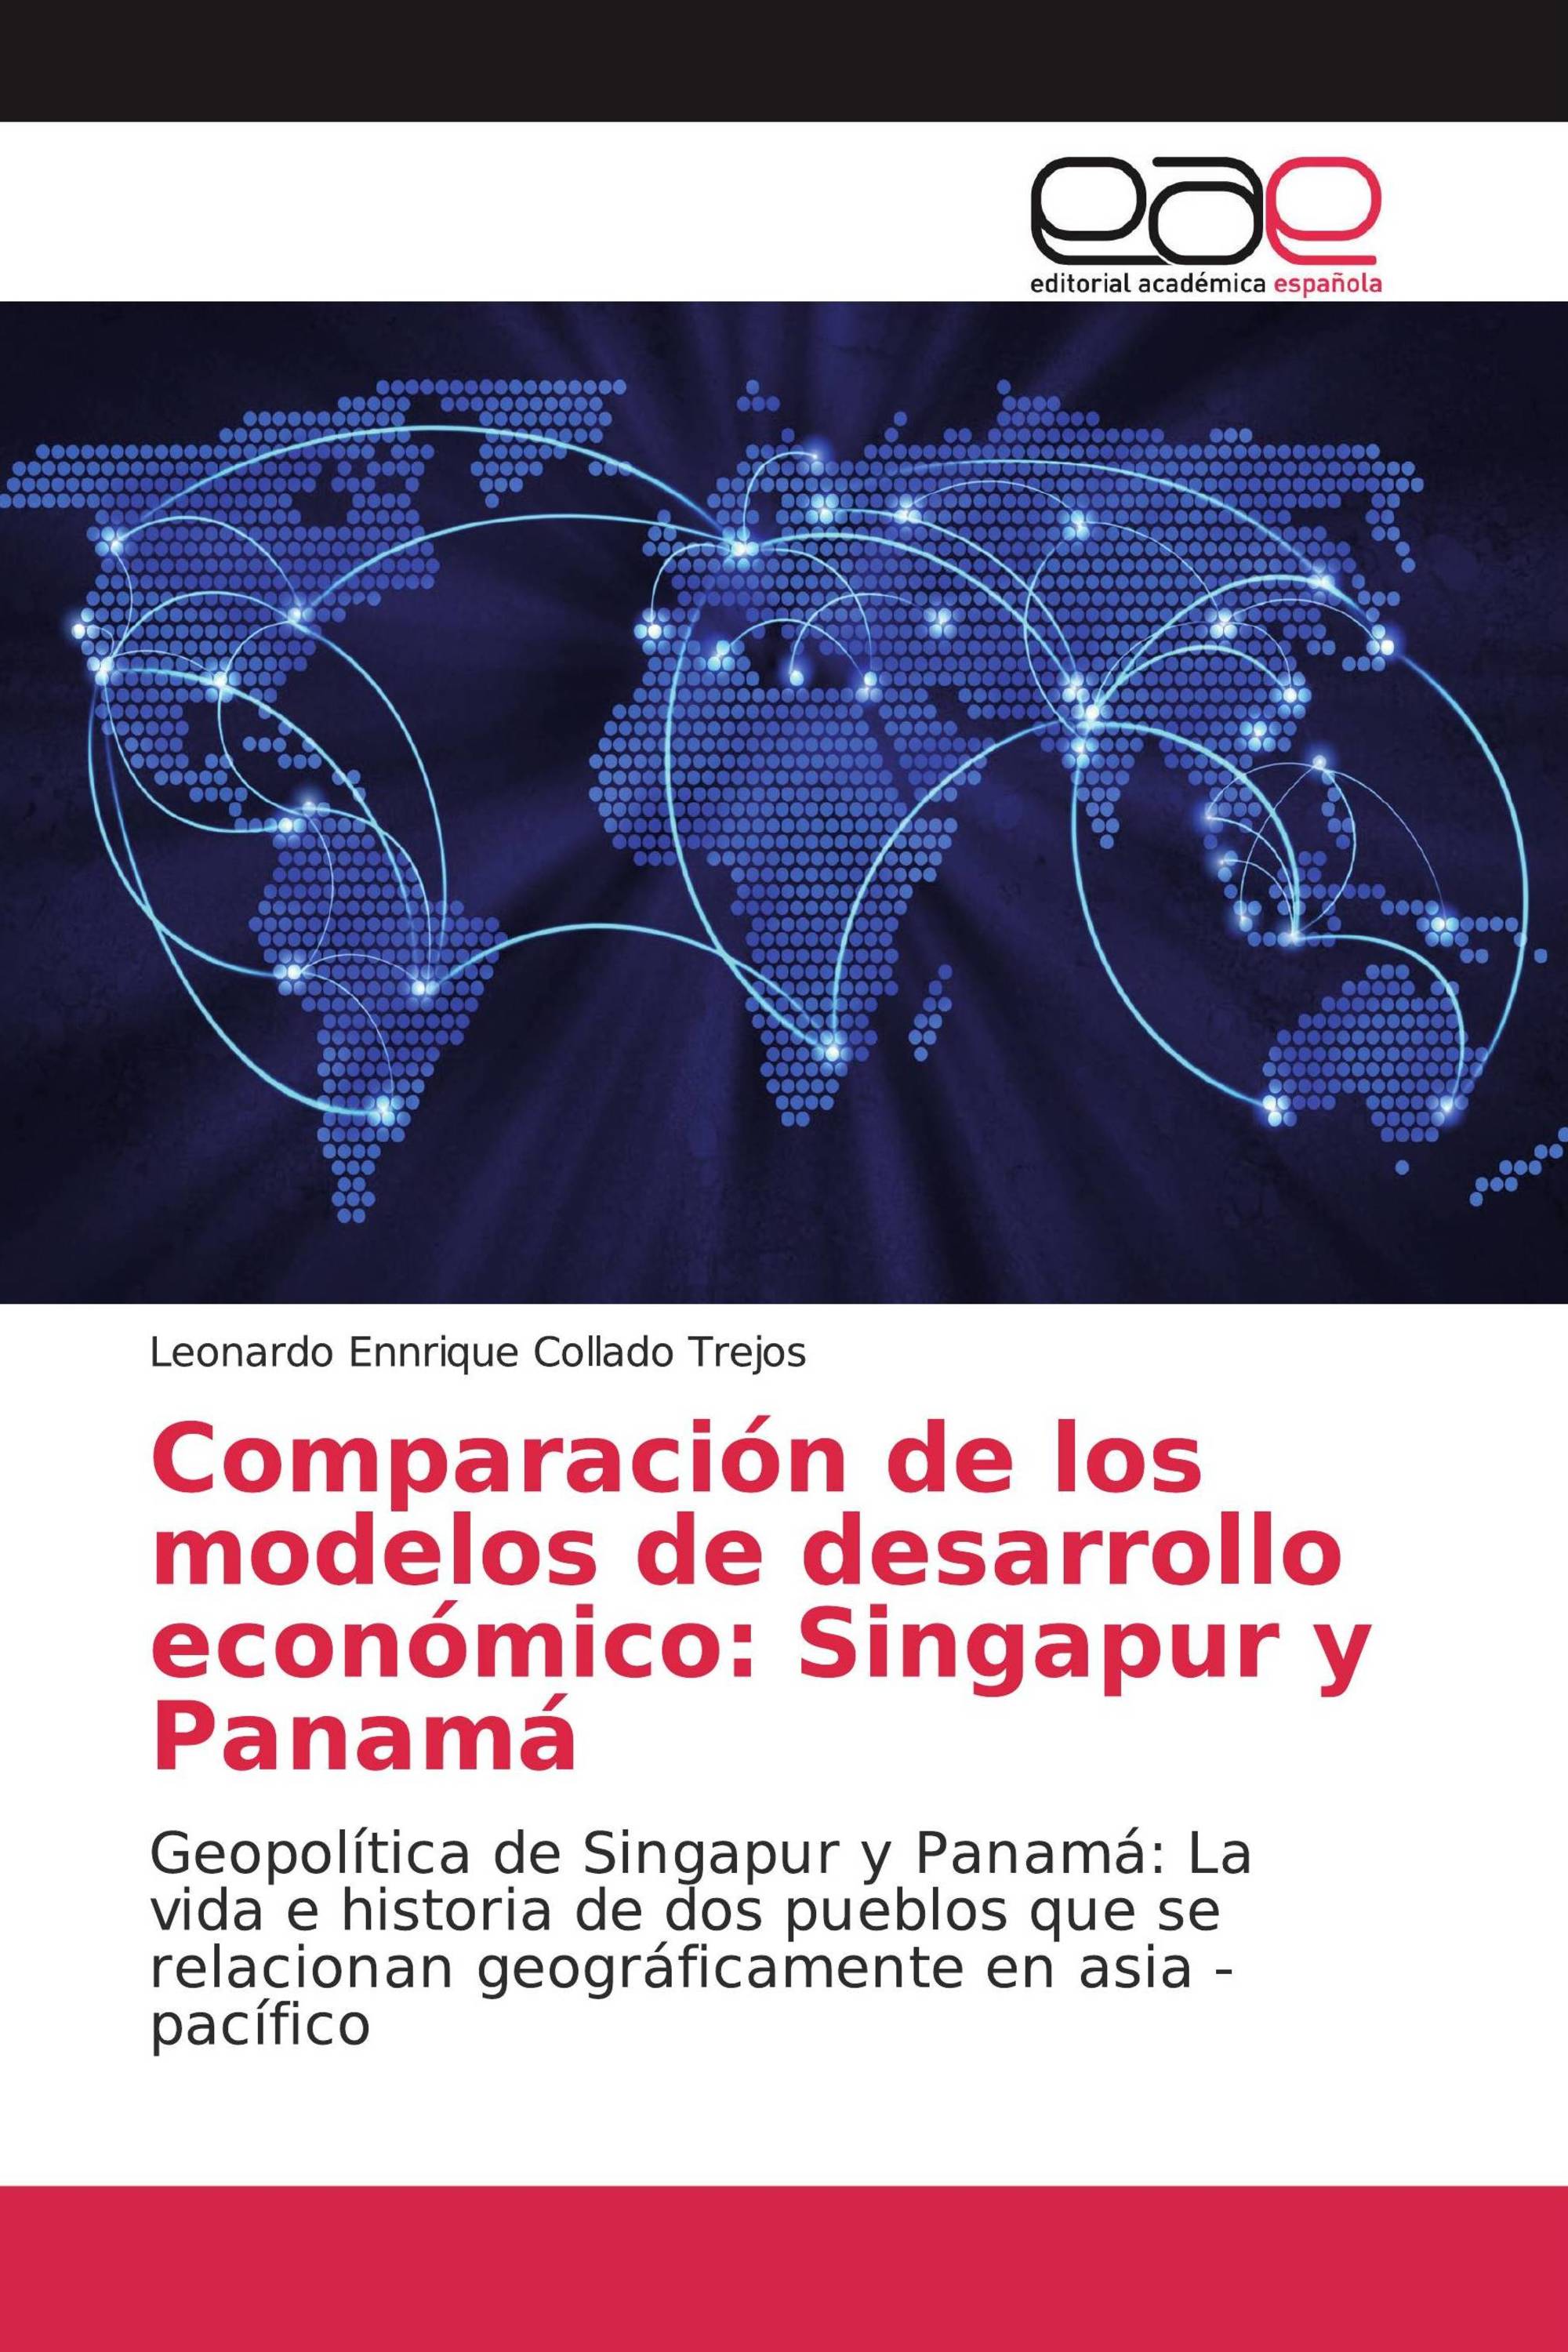 Comparación de los modelos de desarrollo económico: Singapur y Panamá